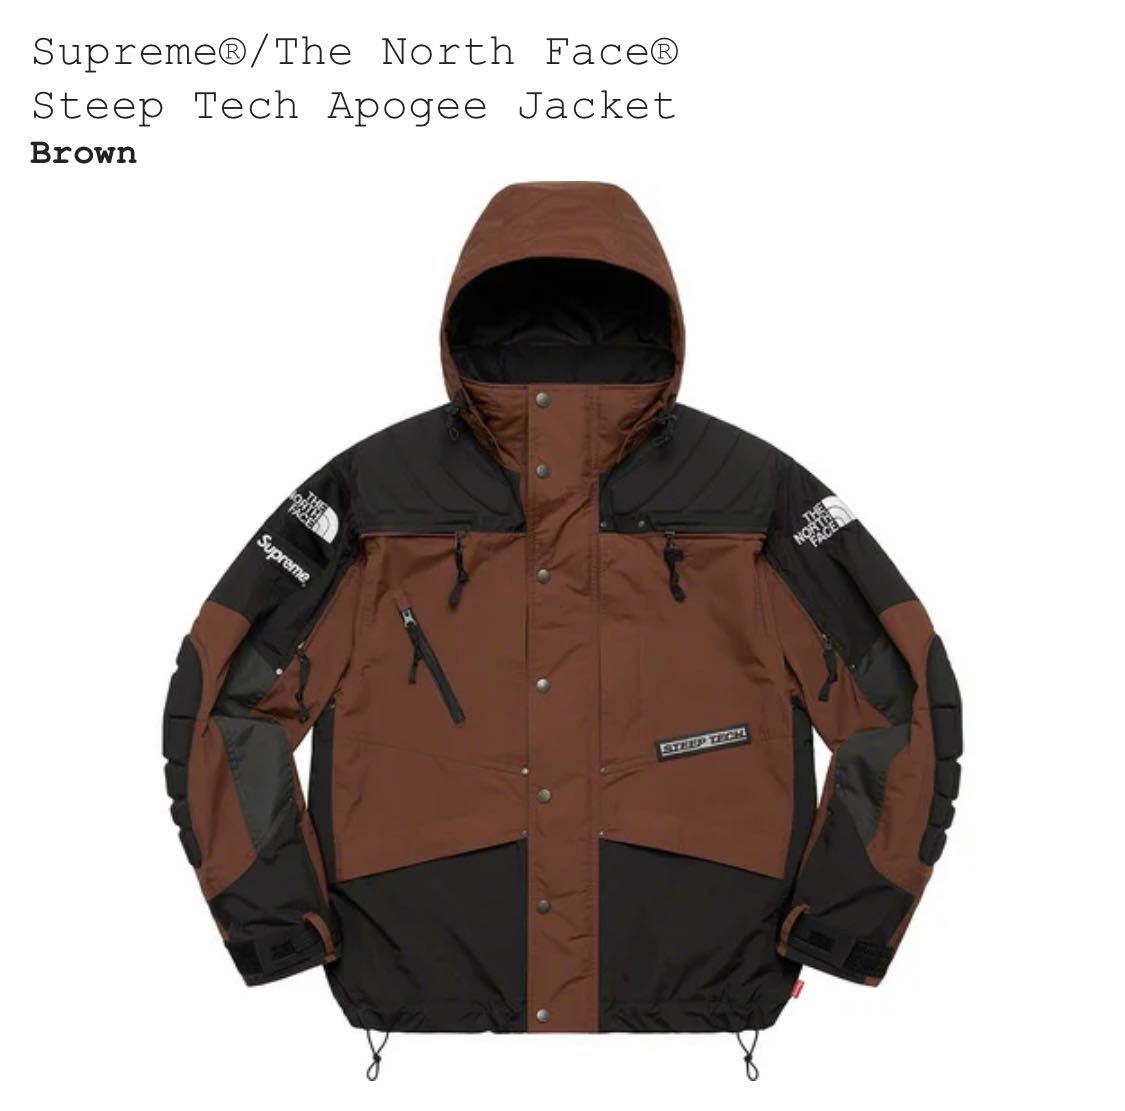 新品 Supreme 22AW North Face Steep Tech Apogee Jacket シュプリーム ノース フェイス アポジー ジャケット M Brown ブラウン 茶 TNF